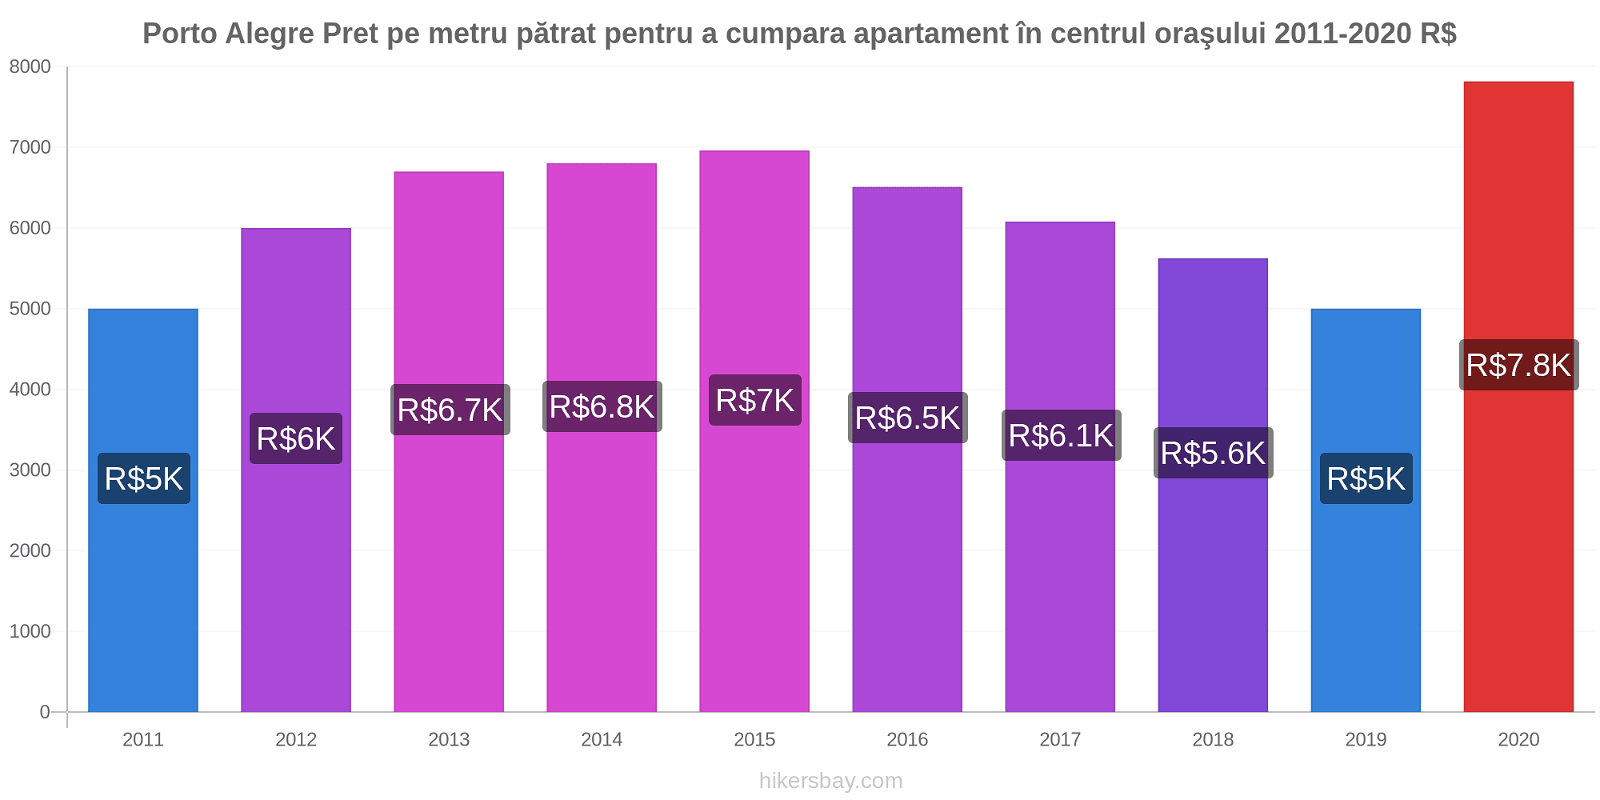 Porto Alegre modificări de preț Pret pe metru pătrat pentru a cumpara apartament în centrul oraşului hikersbay.com